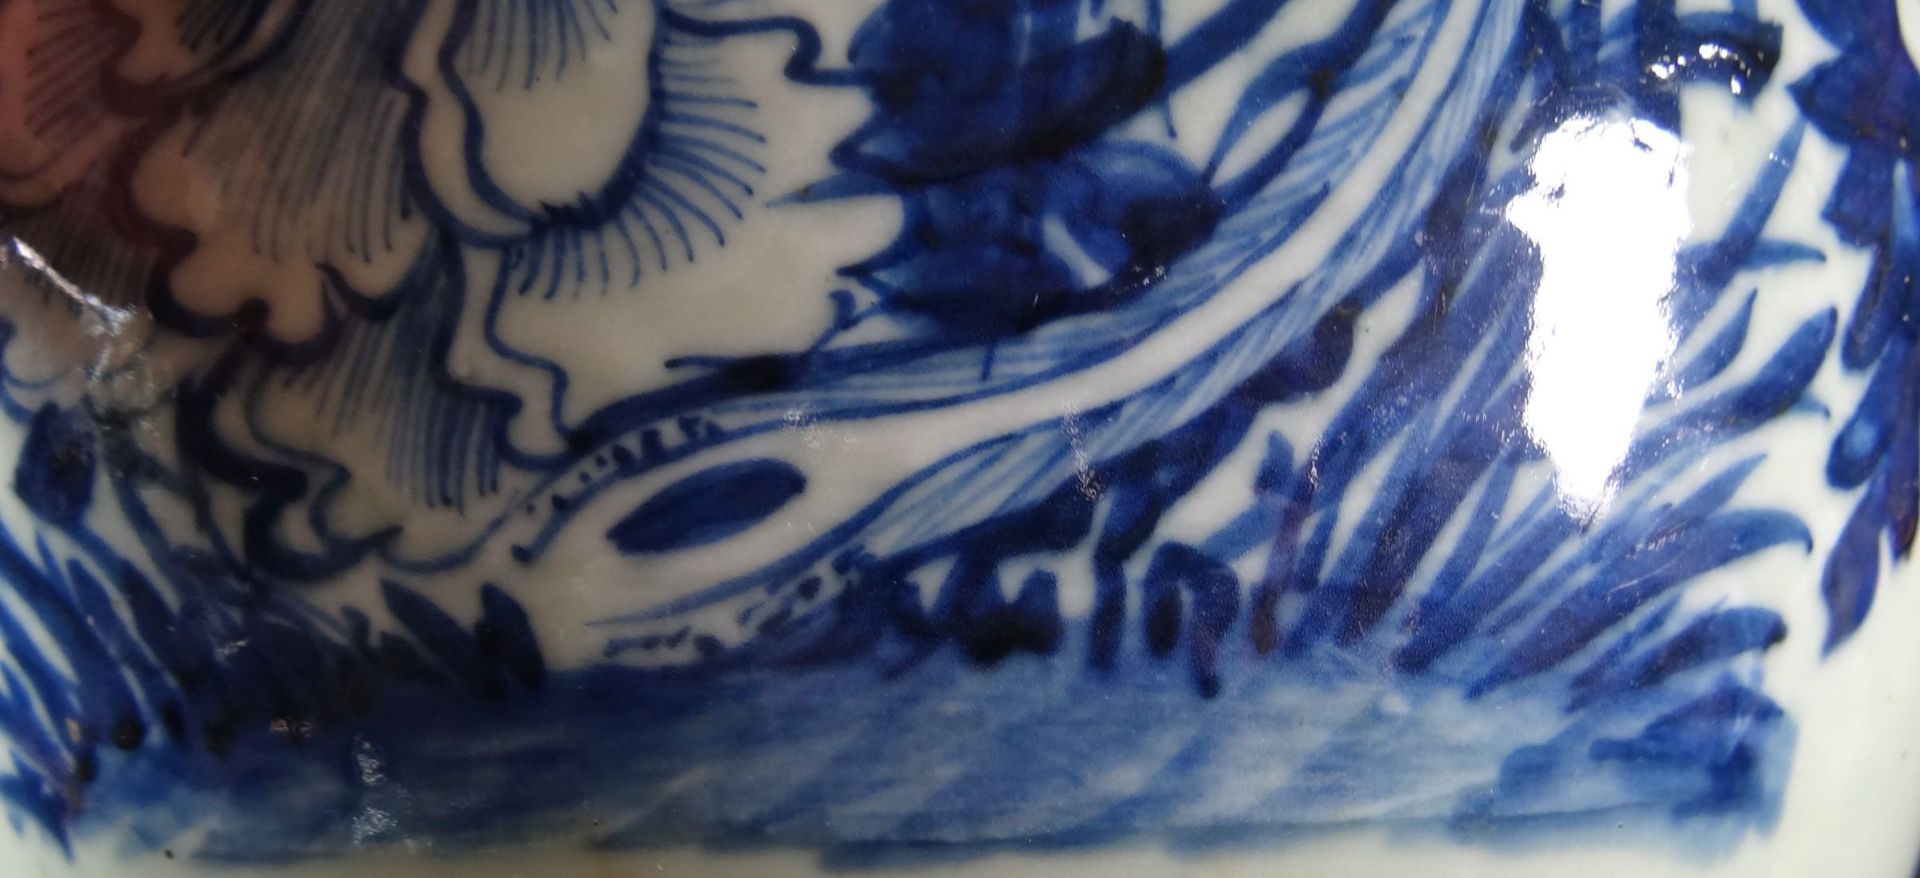 grosses Ingwergefäss oder ähnliches, Blaumalerei mit Vogel, wohl 19.Jhd. China, H-21 cm, D-25- - - - Bild 5 aus 7